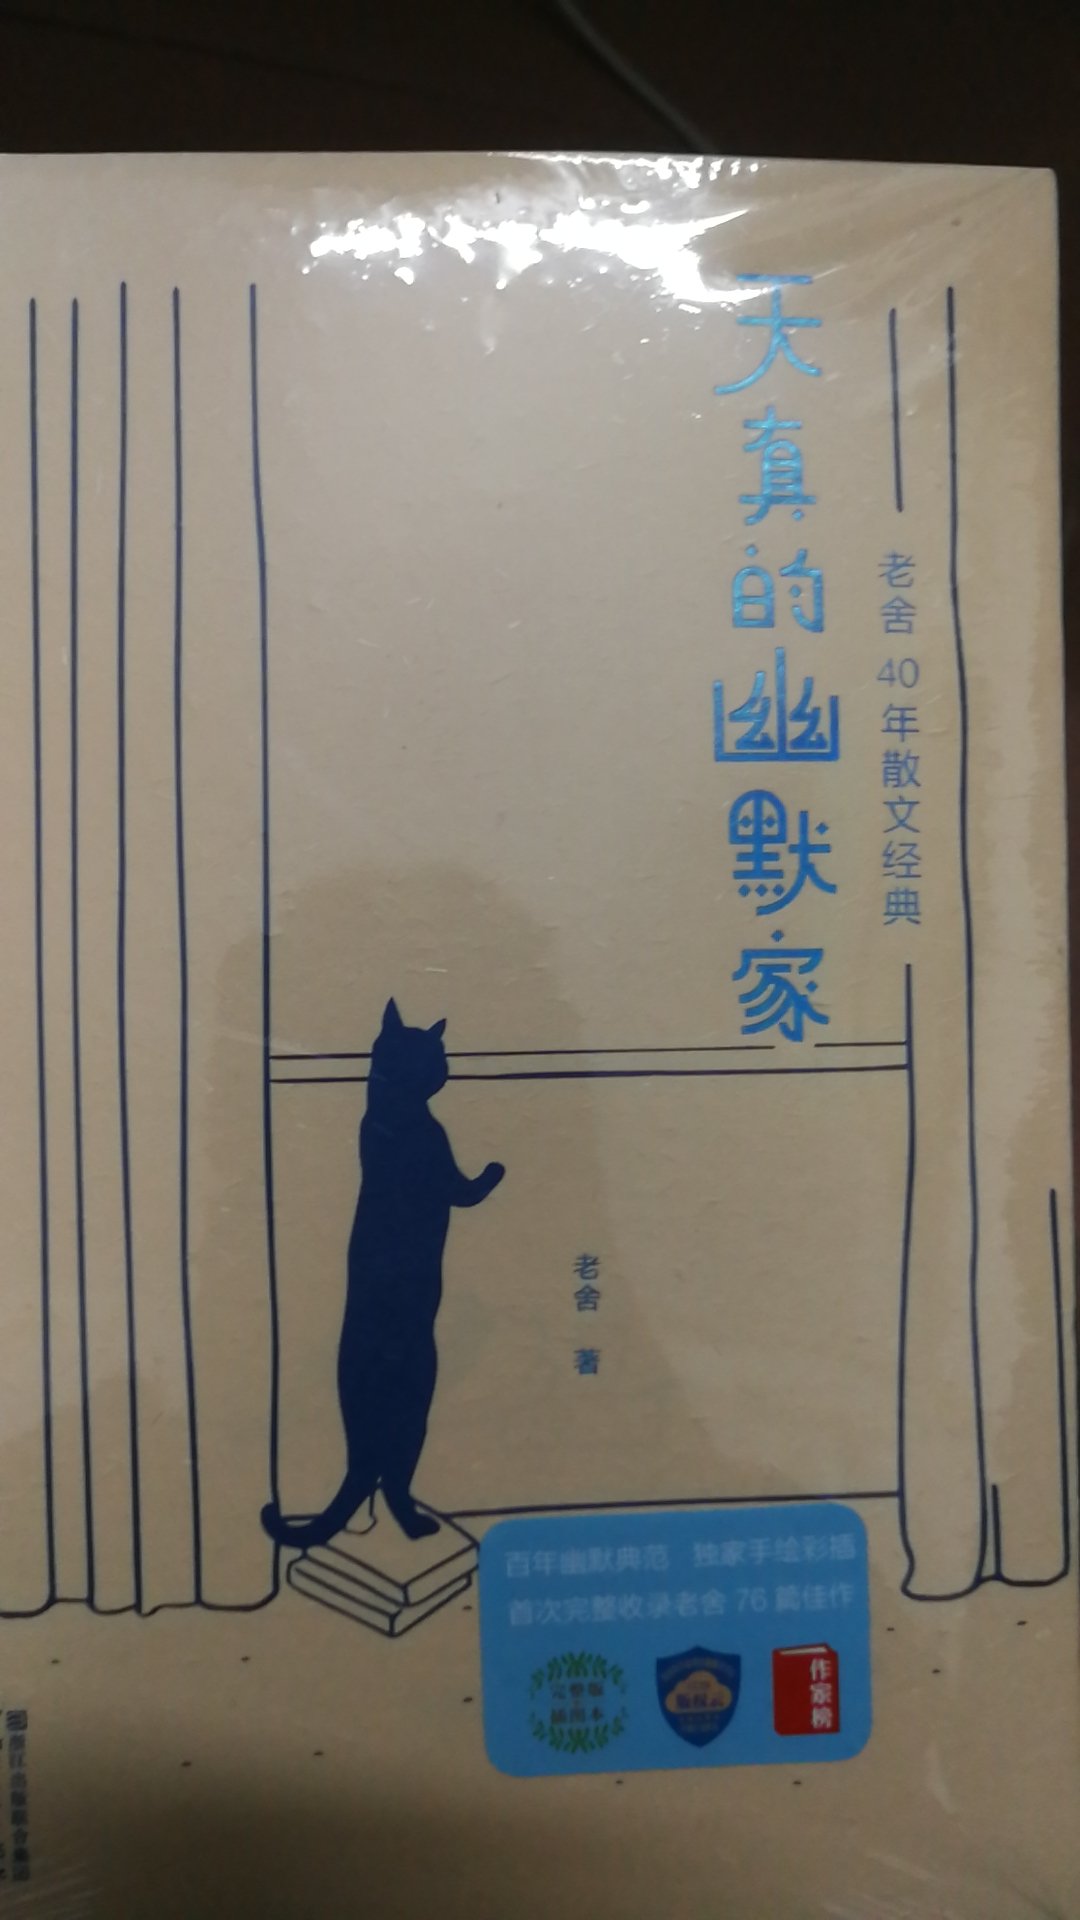 最近刚读完老舍先生的猫城记，非常喜欢那部作品，就想多看看他的作品，刚好搜到这本书，封面很喜欢，就想着买来看看